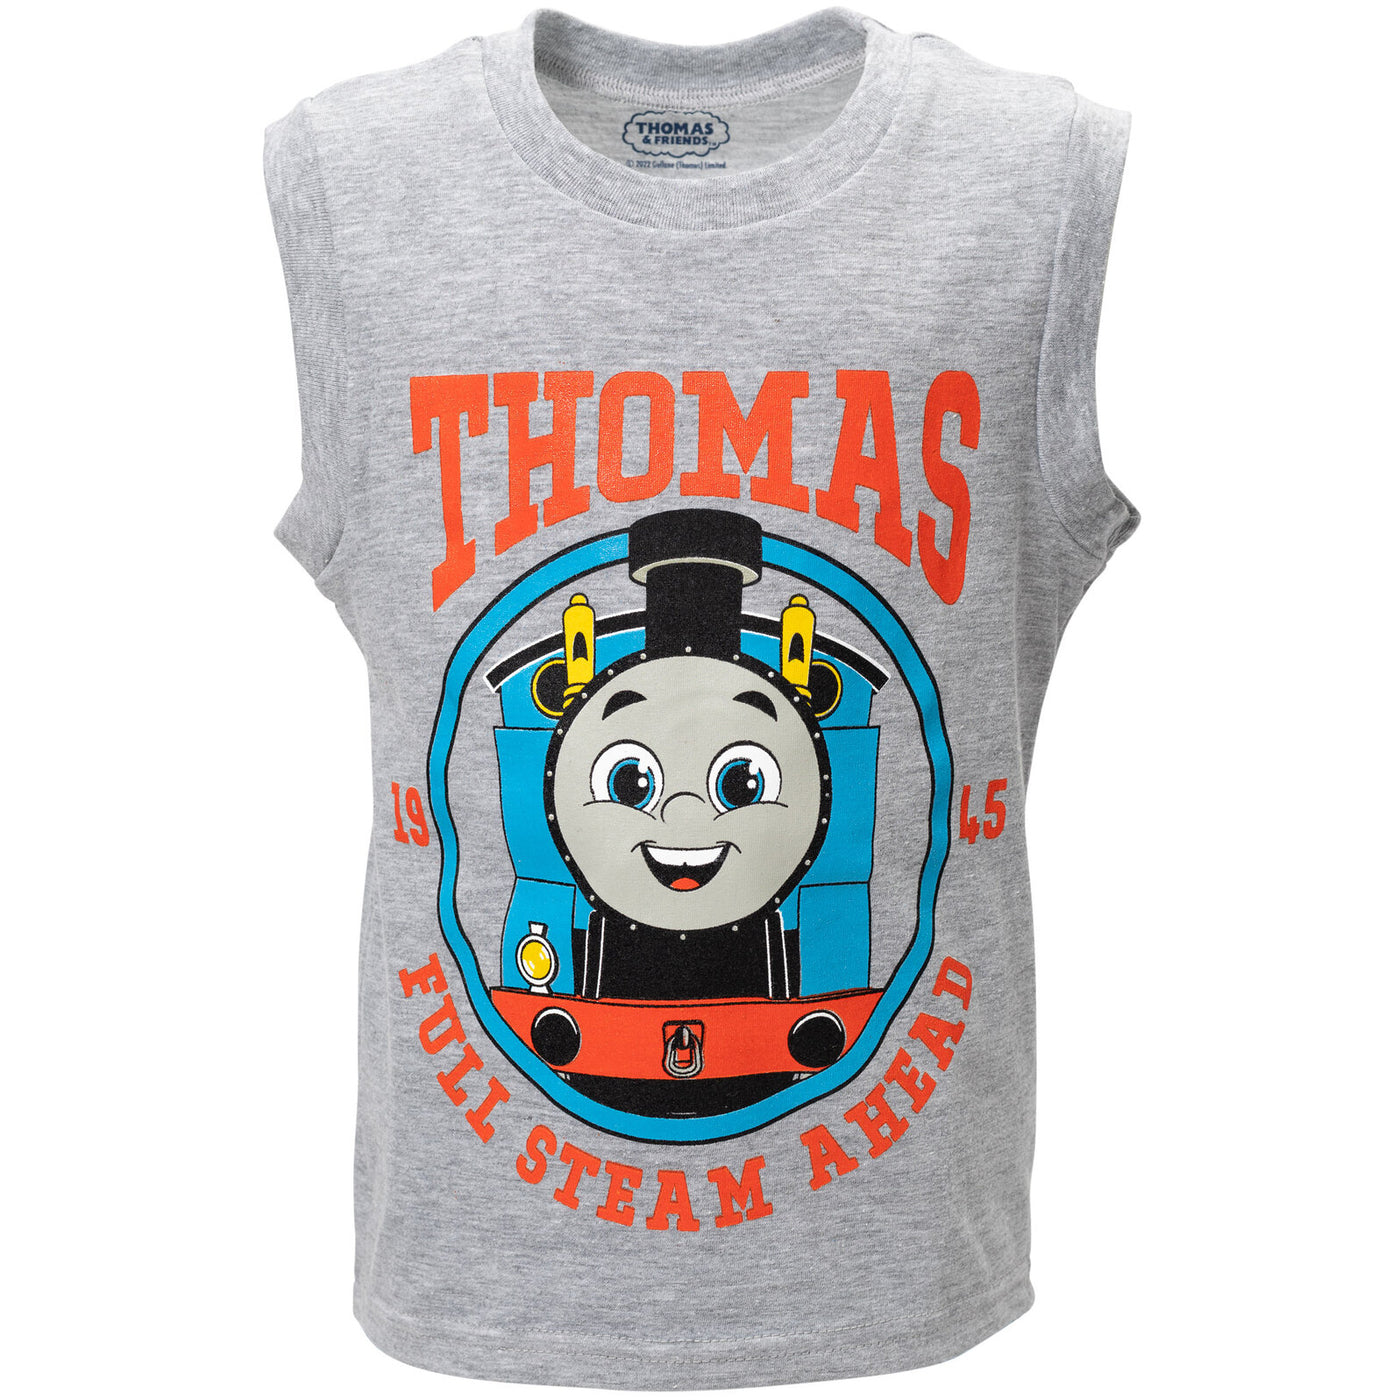 Conjunto de 3 piezas de Thomas &amp; Friends: camiseta sin mangas y pantalones cortos de felpa francesa